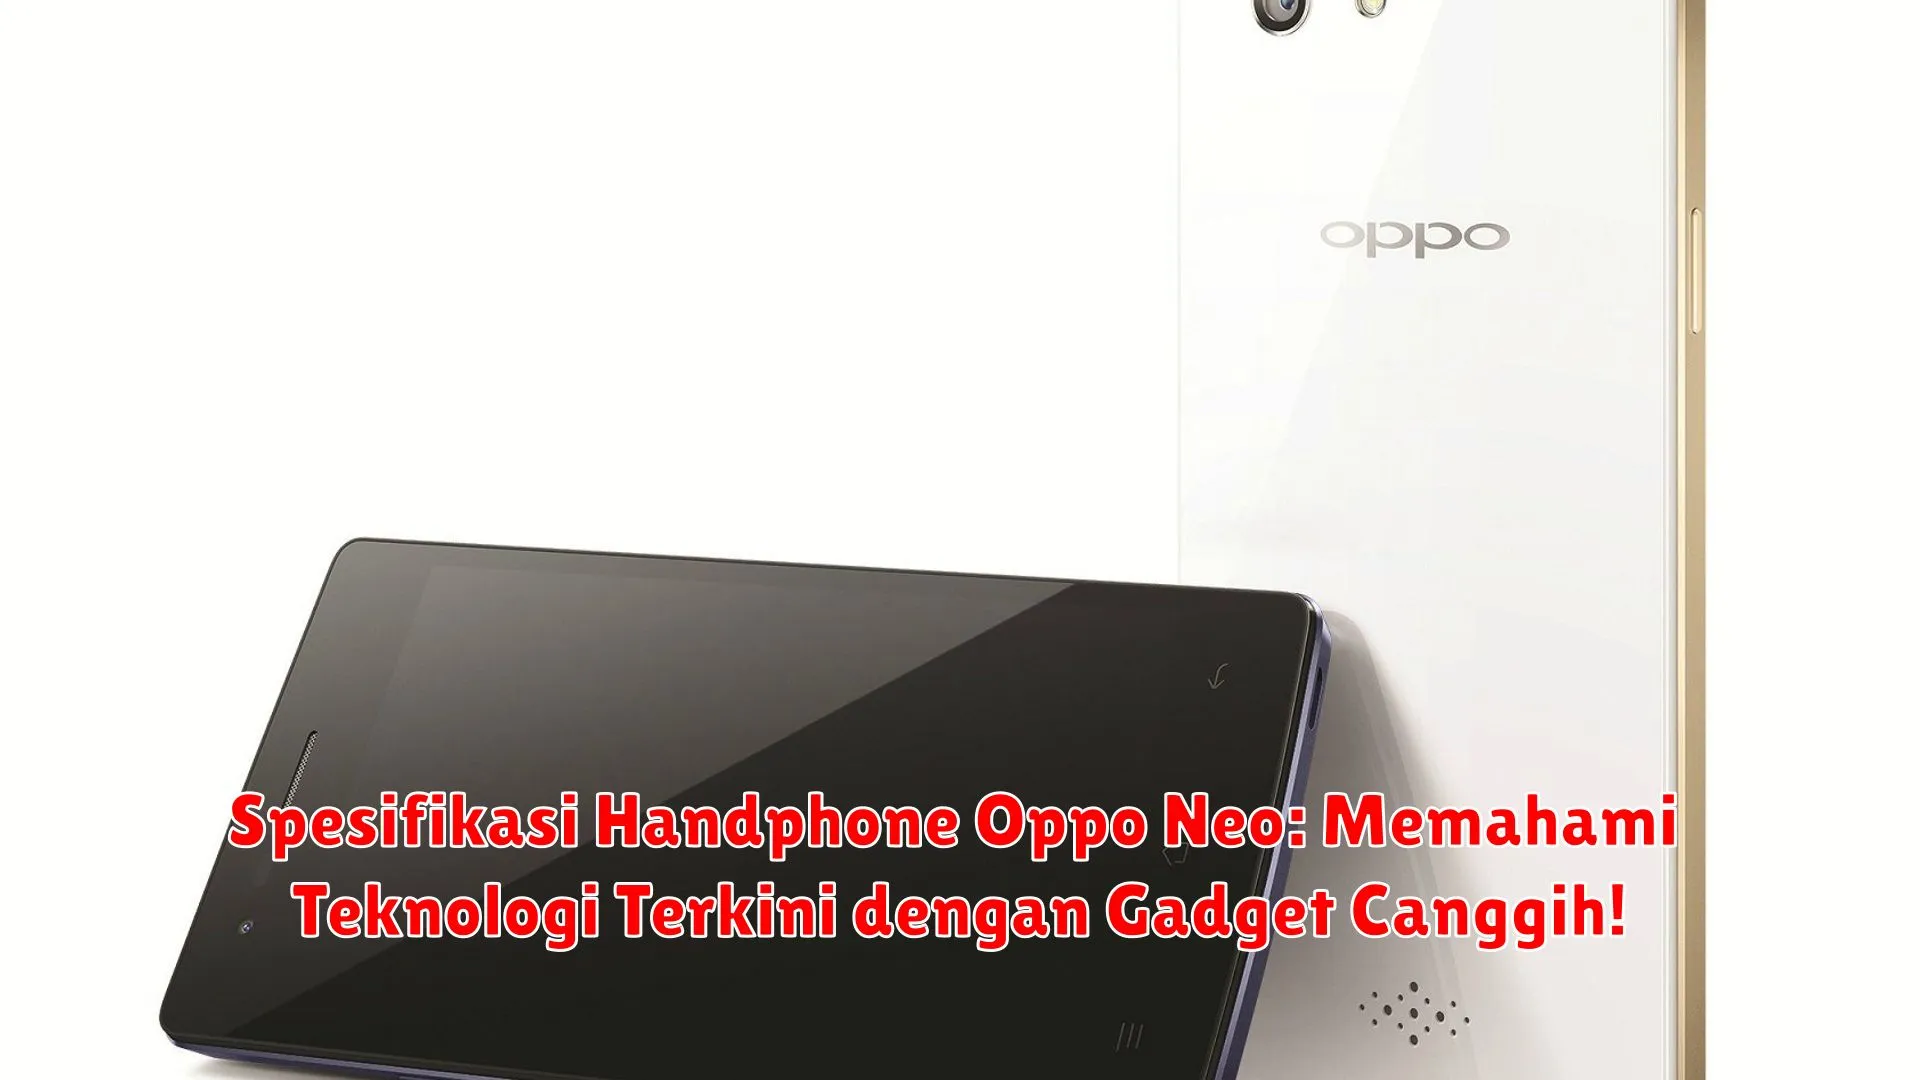 Spesifikasi Handphone Oppo Neo: Memahami Teknologi Terkini dengan Gadget Canggih!